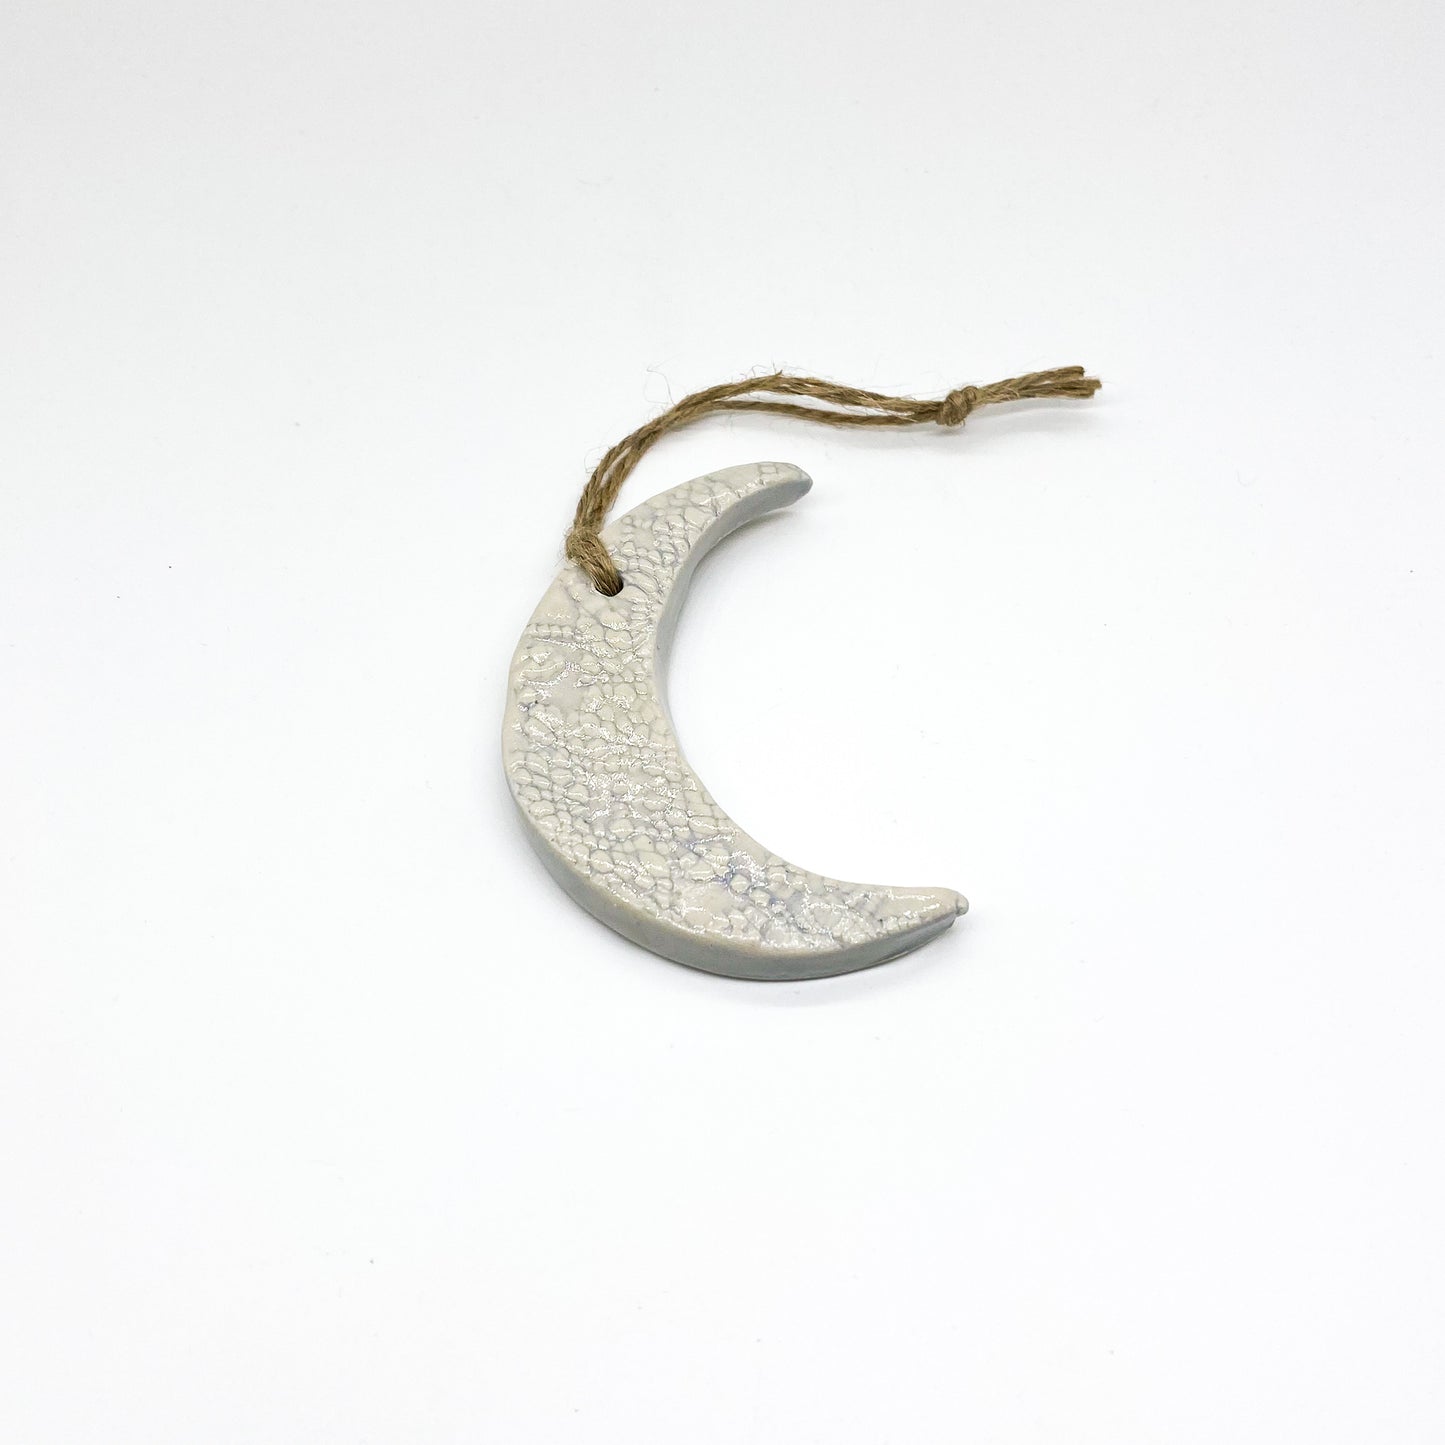 Crescent Moon Ornament